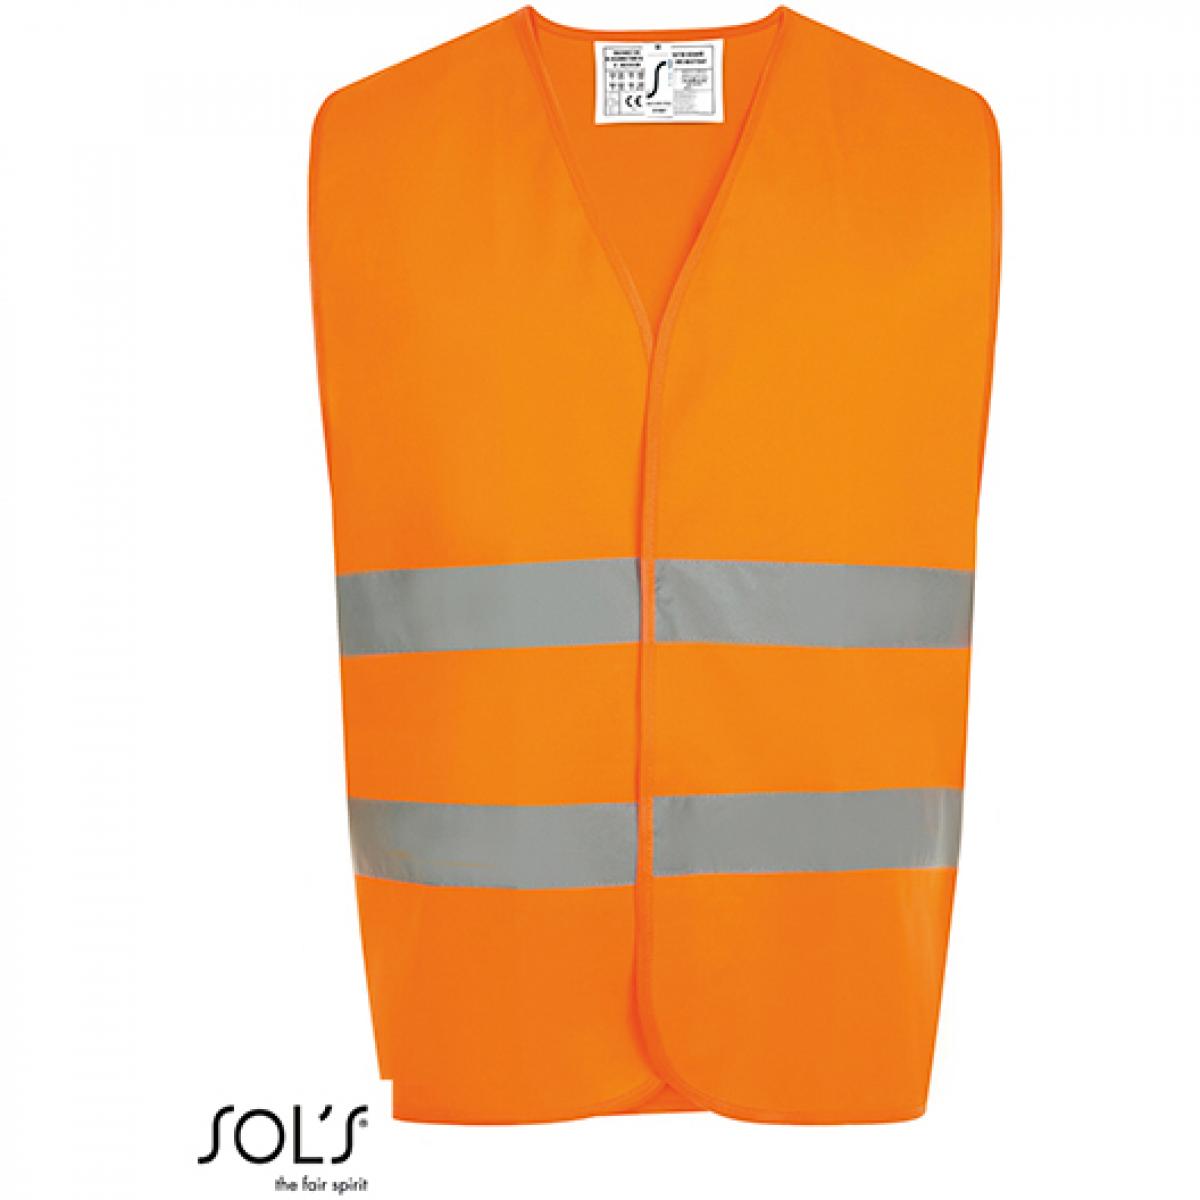 Hersteller: SOLs ProWear Herstellernummer: 01691 Artikelbezeichnung: Herren Secure Pro Unisey Safety Vest Farbe: Neon Orange